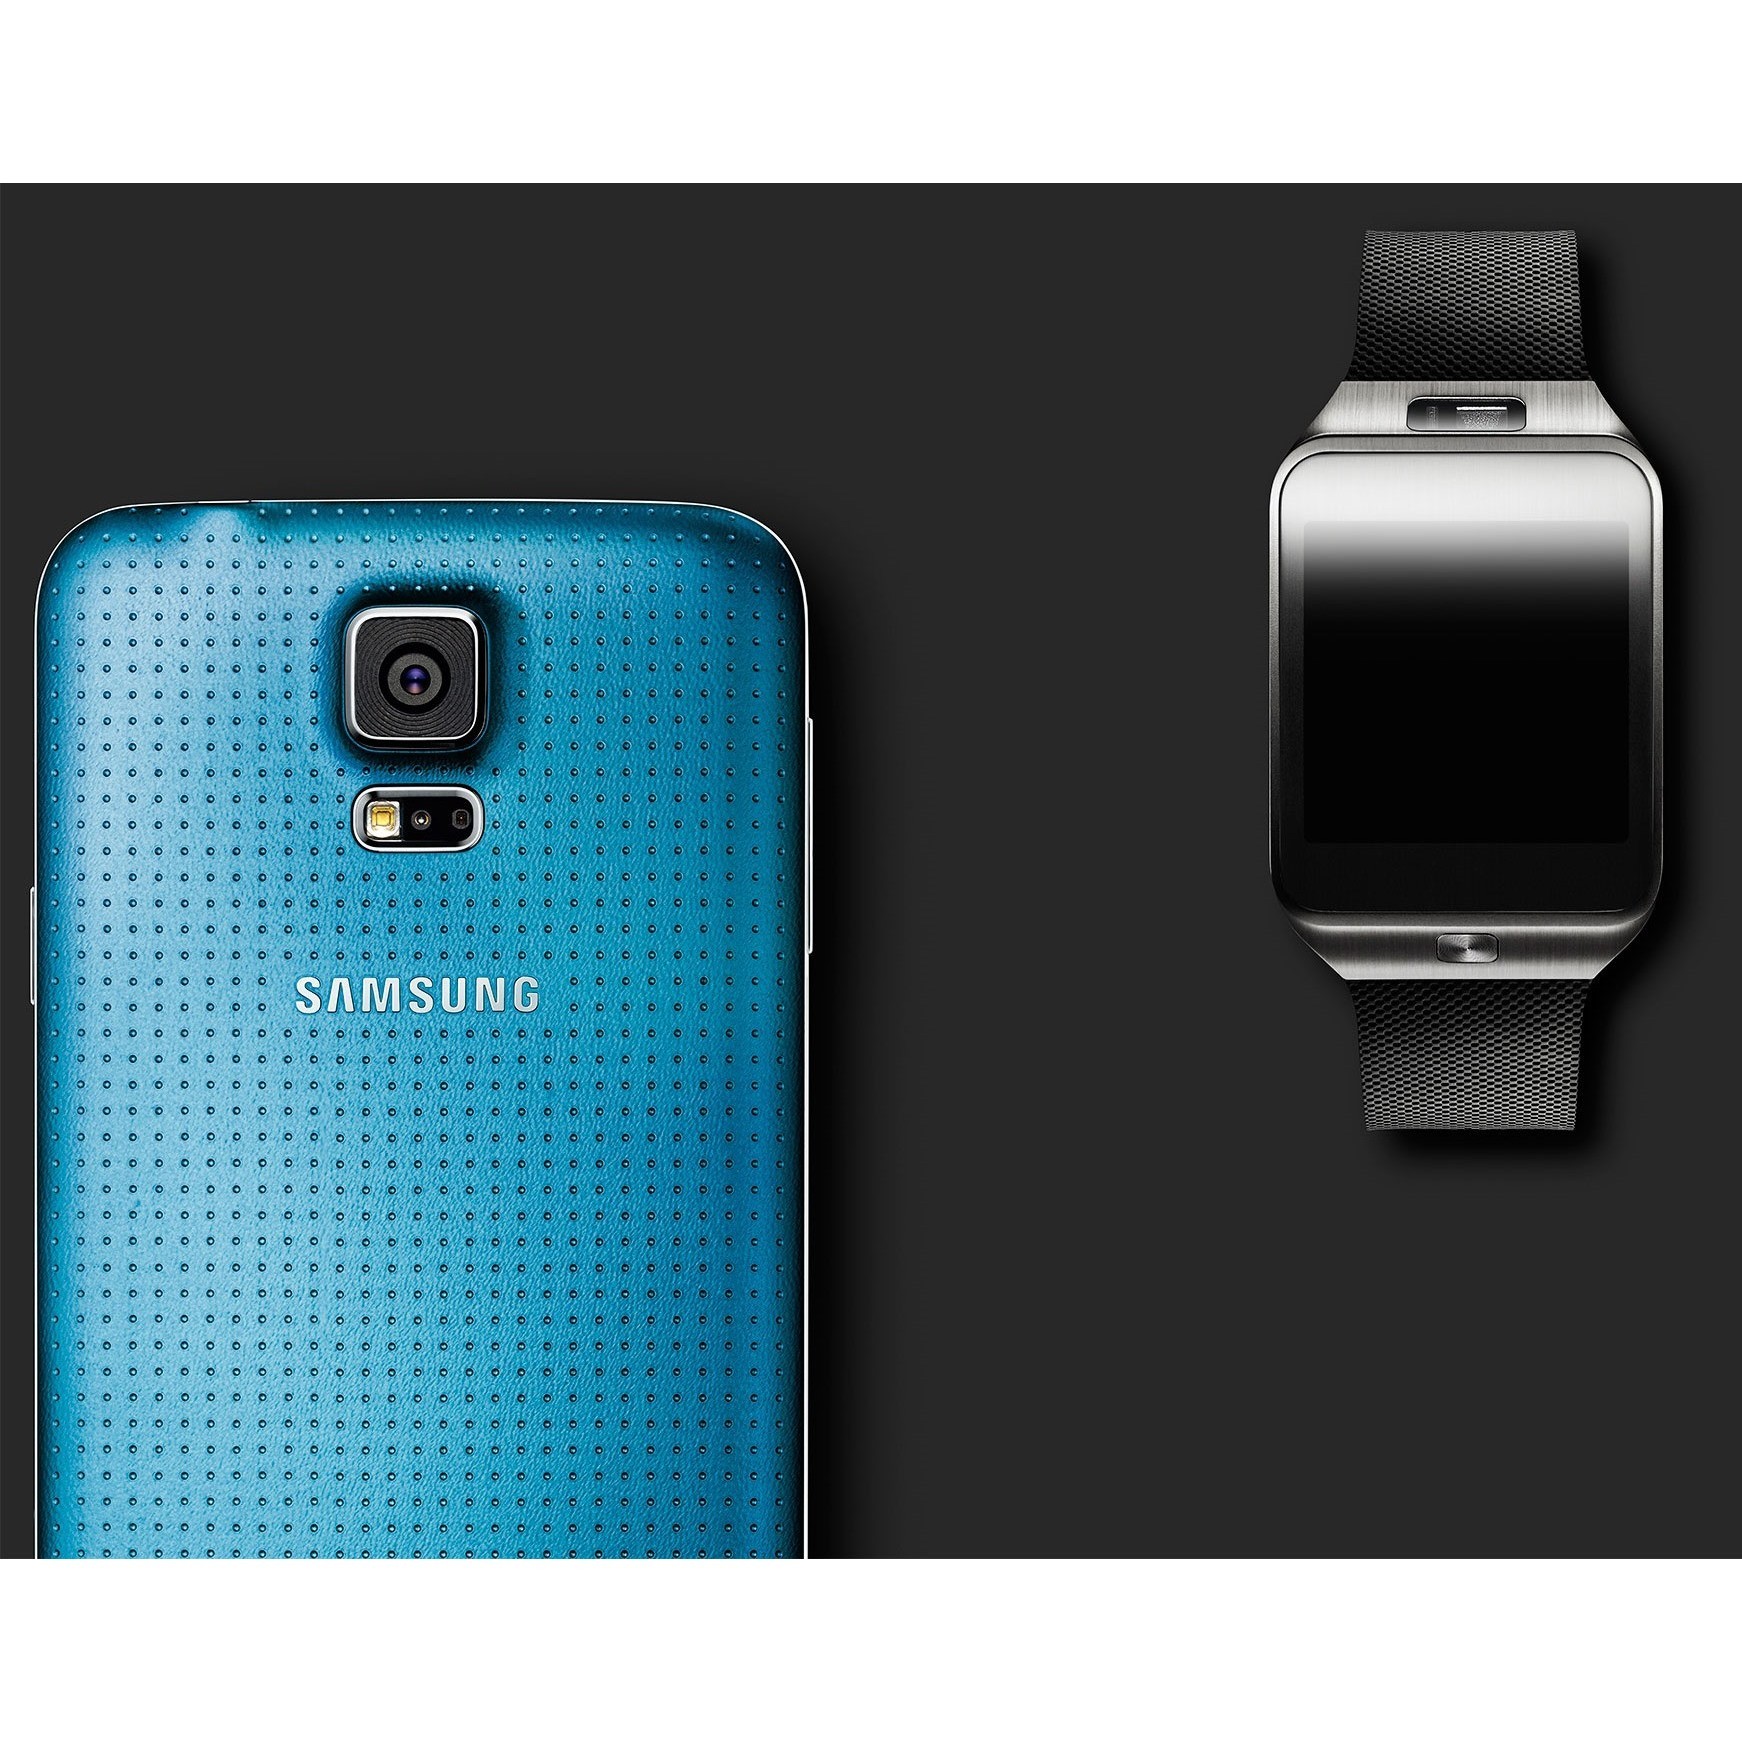 Самсунг чей производитель. Samsung Galaxy s5 Blue. Самсунг галакси а5. Samsung Galaxy s5 2. Samsung Gear s5.